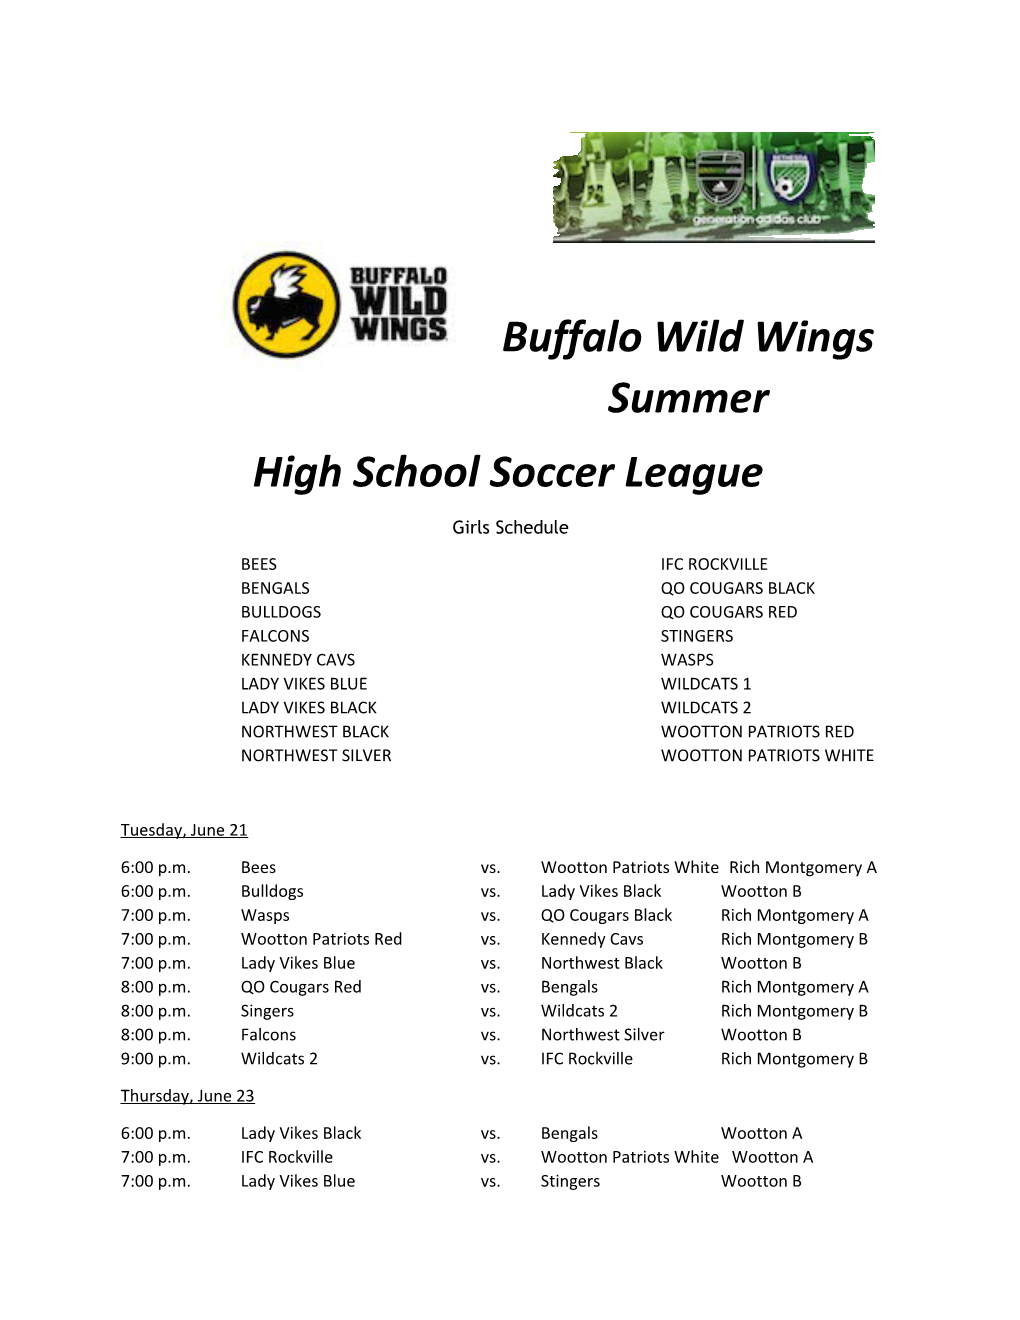 Buffalo Wild Wings Summer